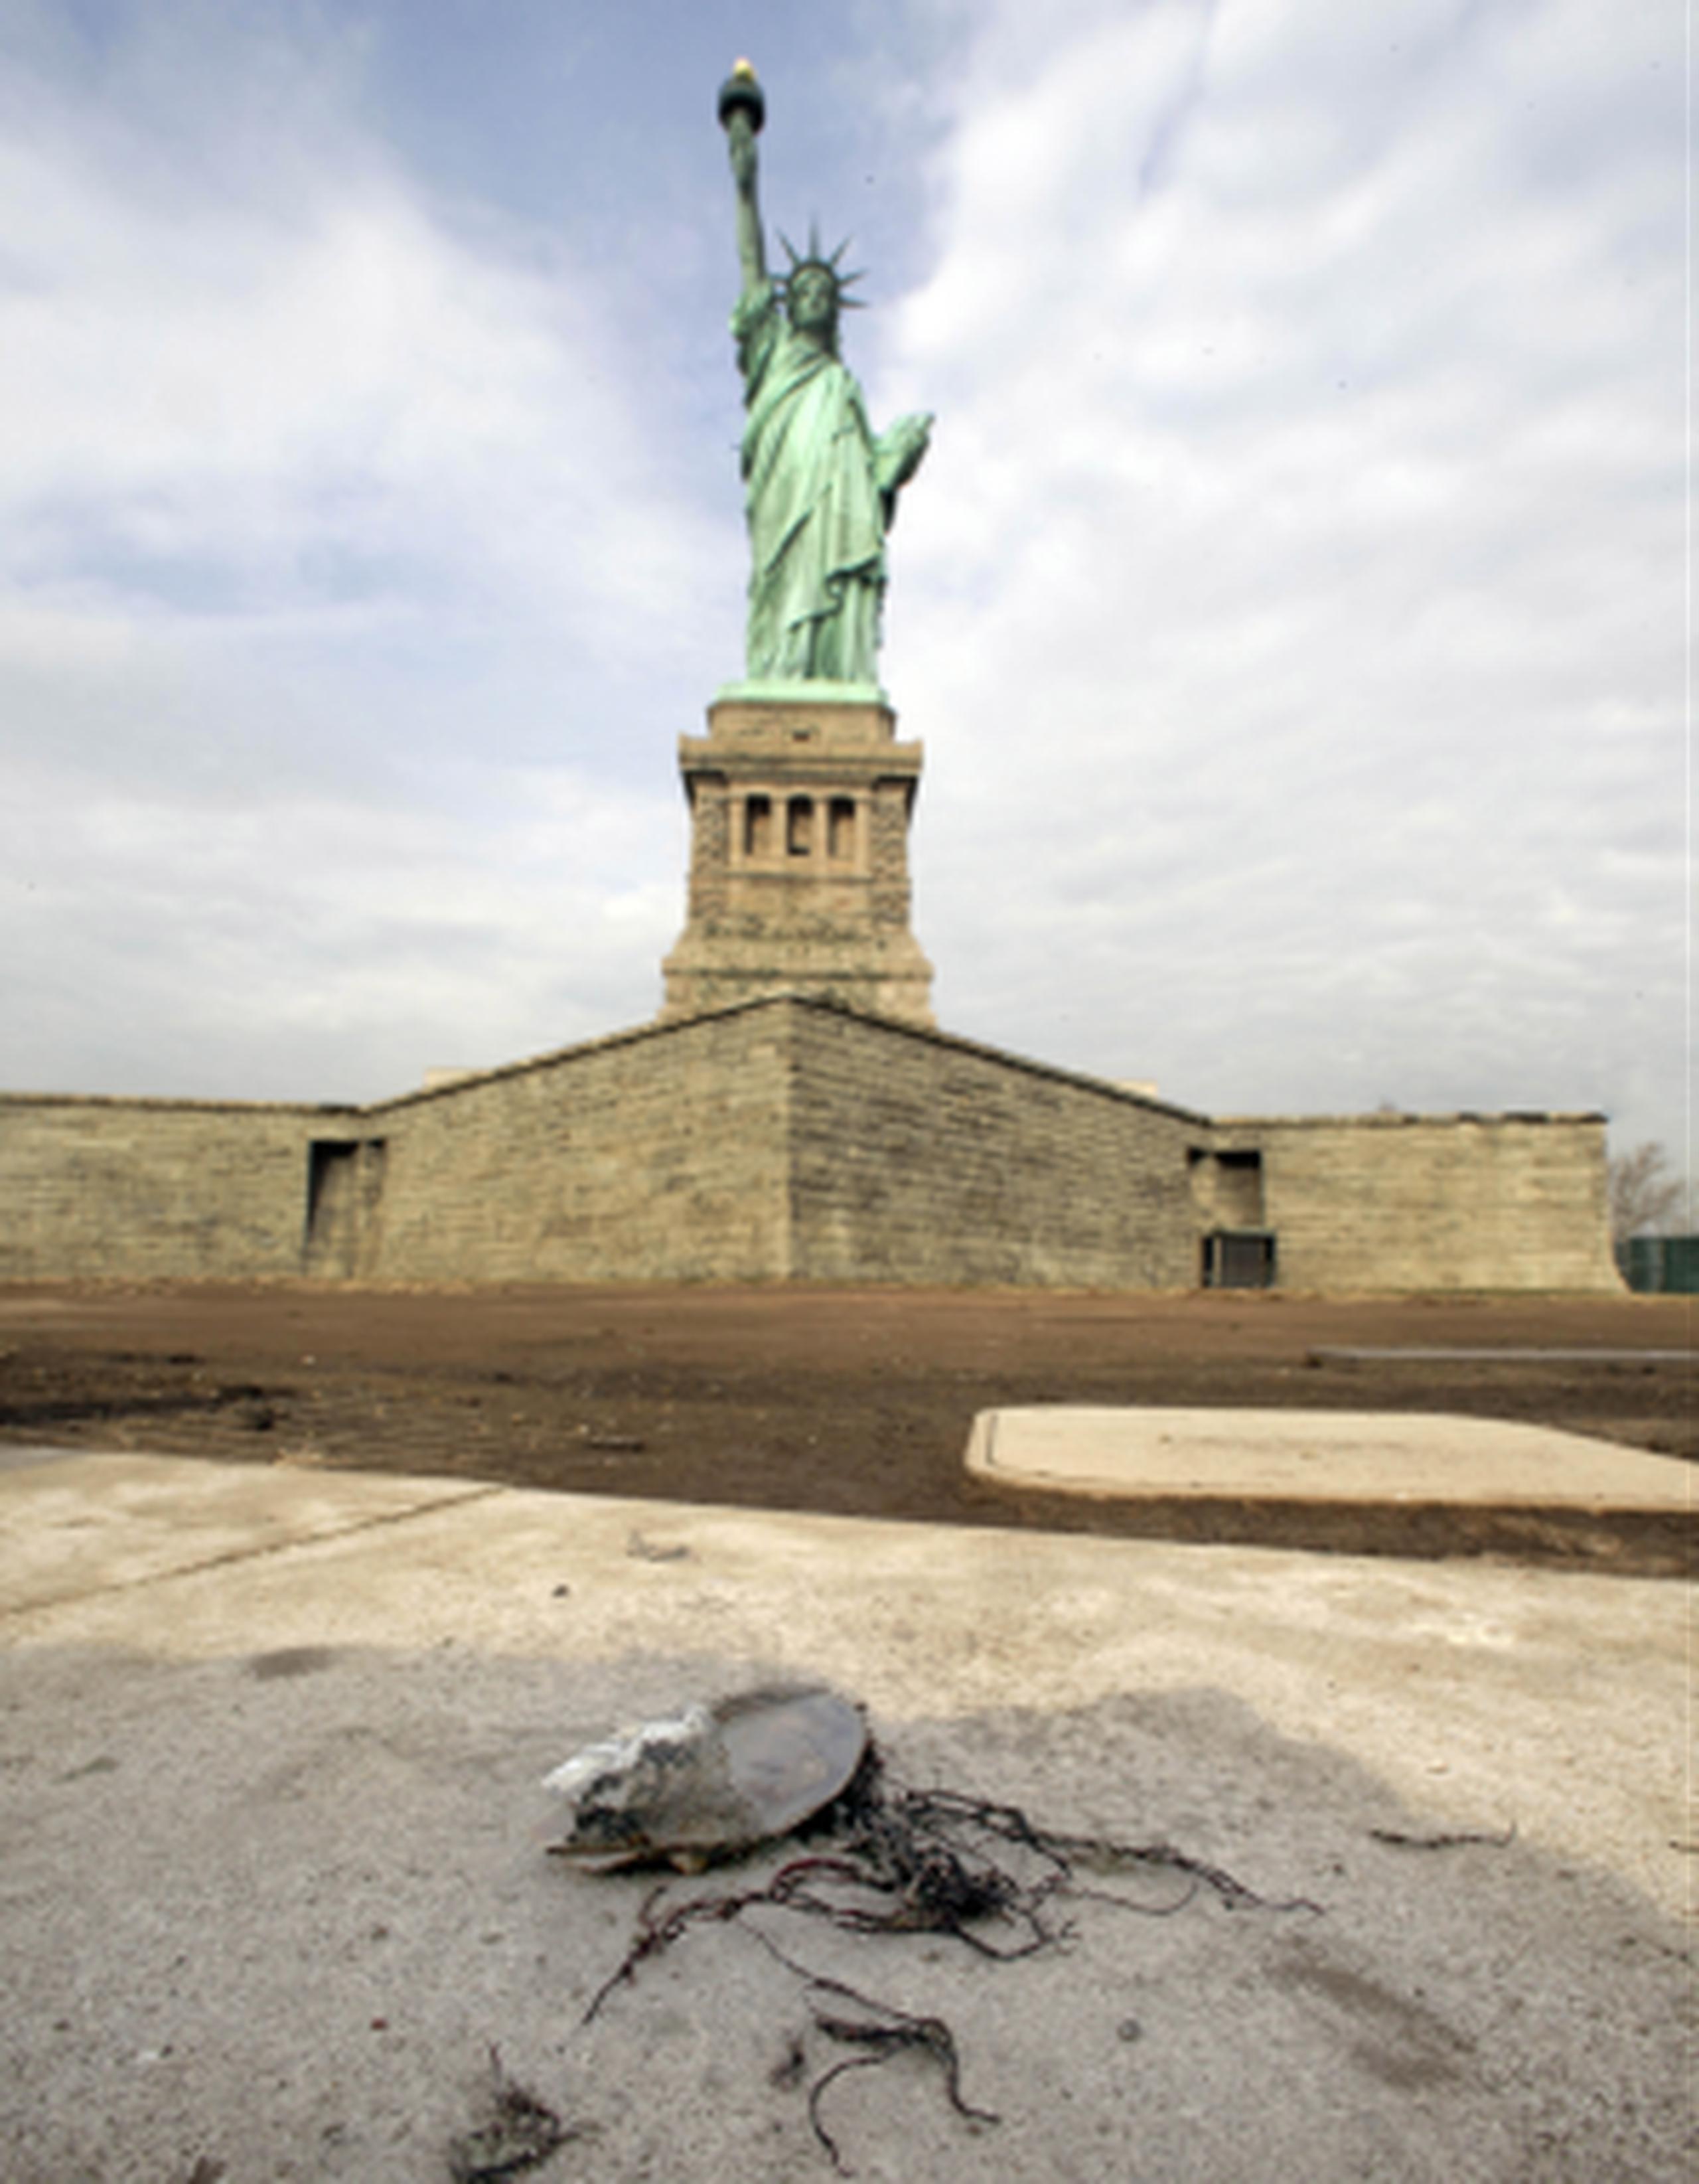 La estatua atrae a millones de turistas de todo el mundo cada año y por eso las autoridades confían que su reapertura sea de gran ayuda económica para la ciudad y el sector empresarial. (AFP)